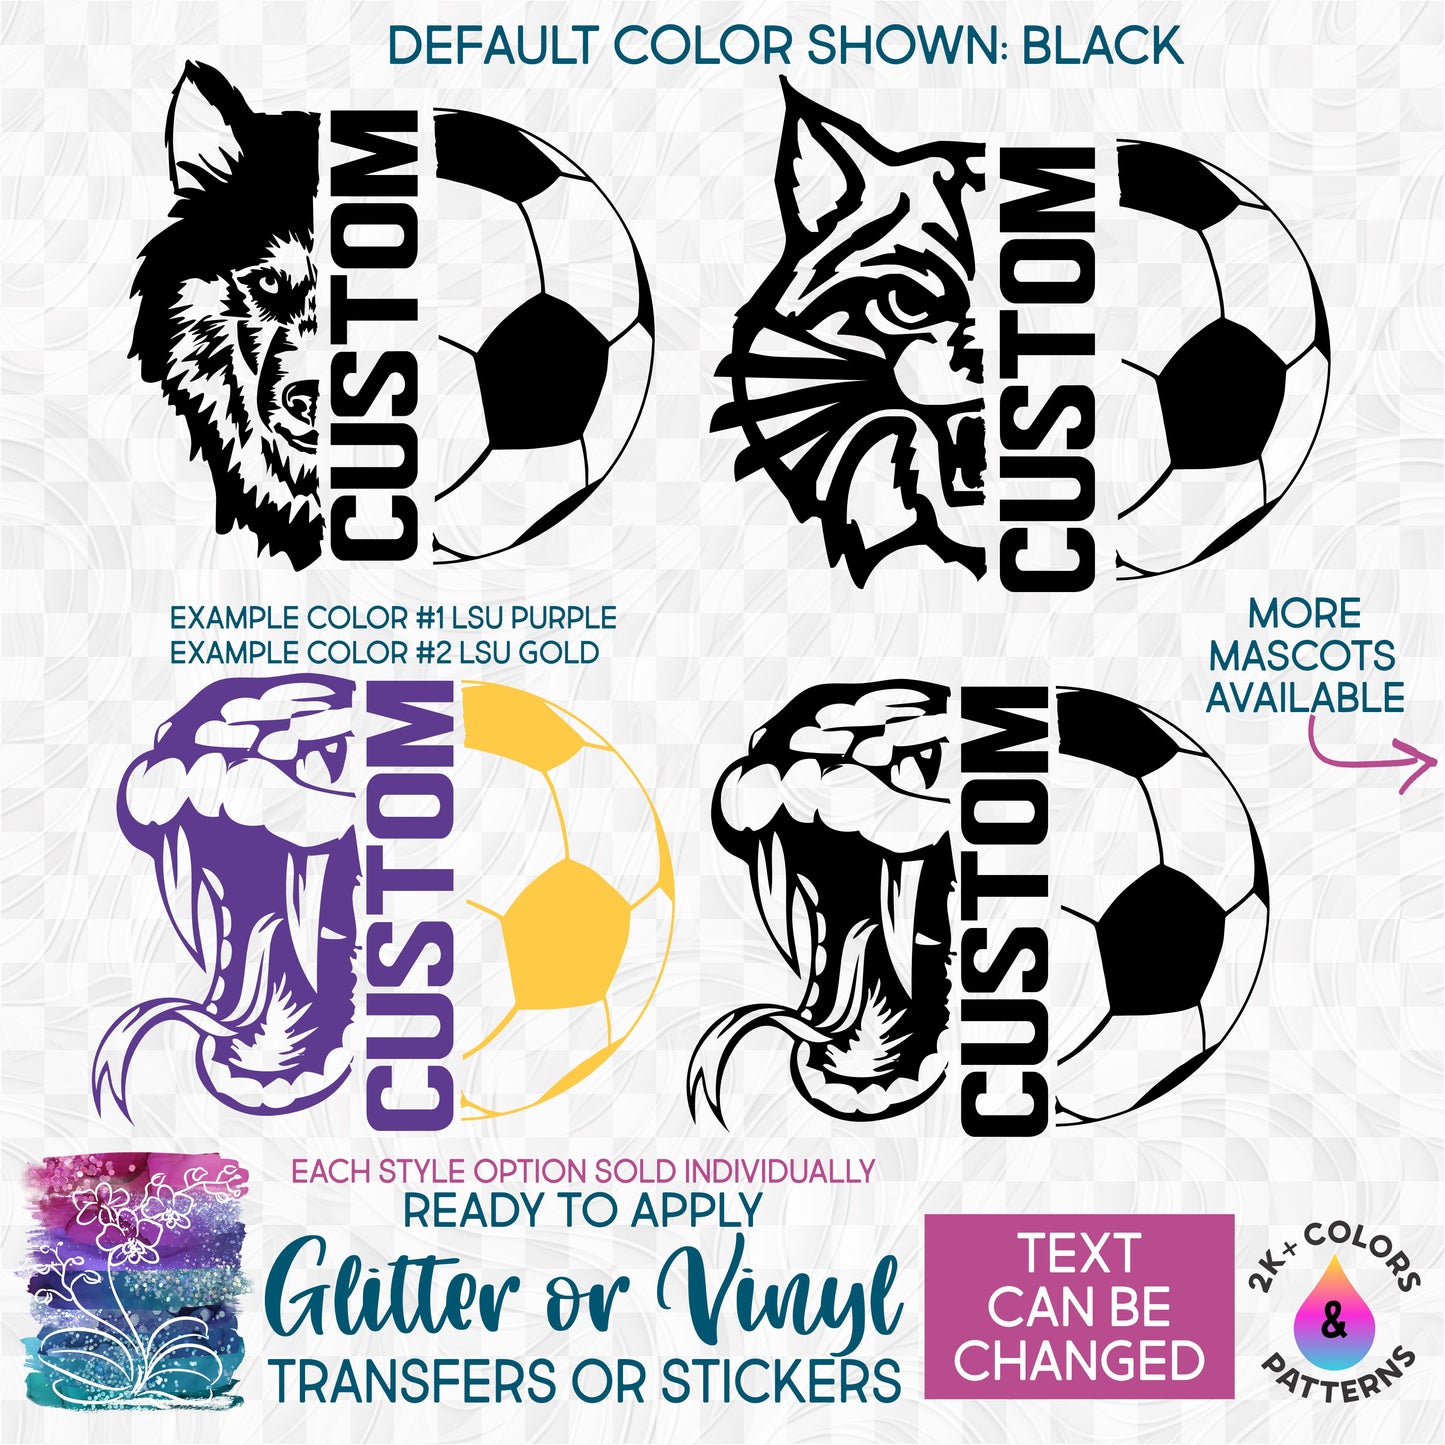 (s317-L) Split Soccer Mascot Team Name Glitter or Vinyl Iron-On Transfer or Sticker